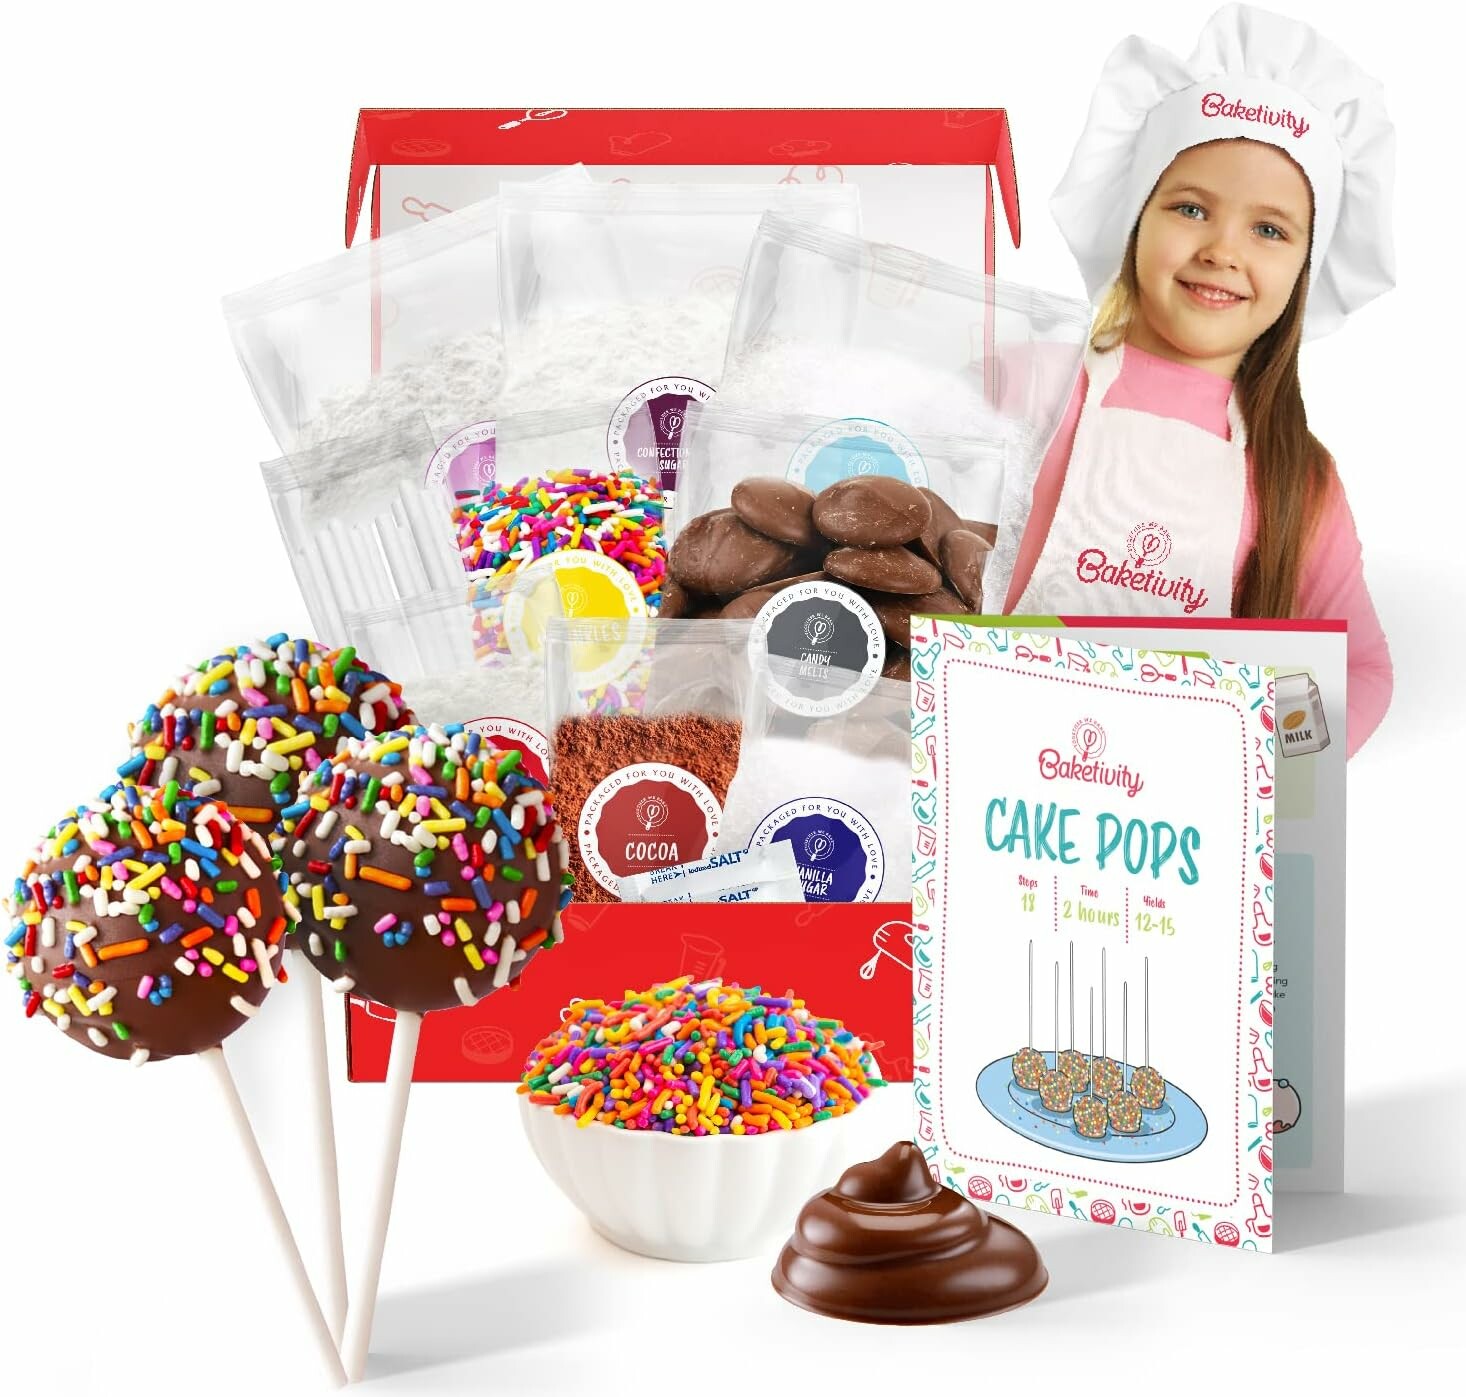 DIY cake pops kit for kids from Baketivity